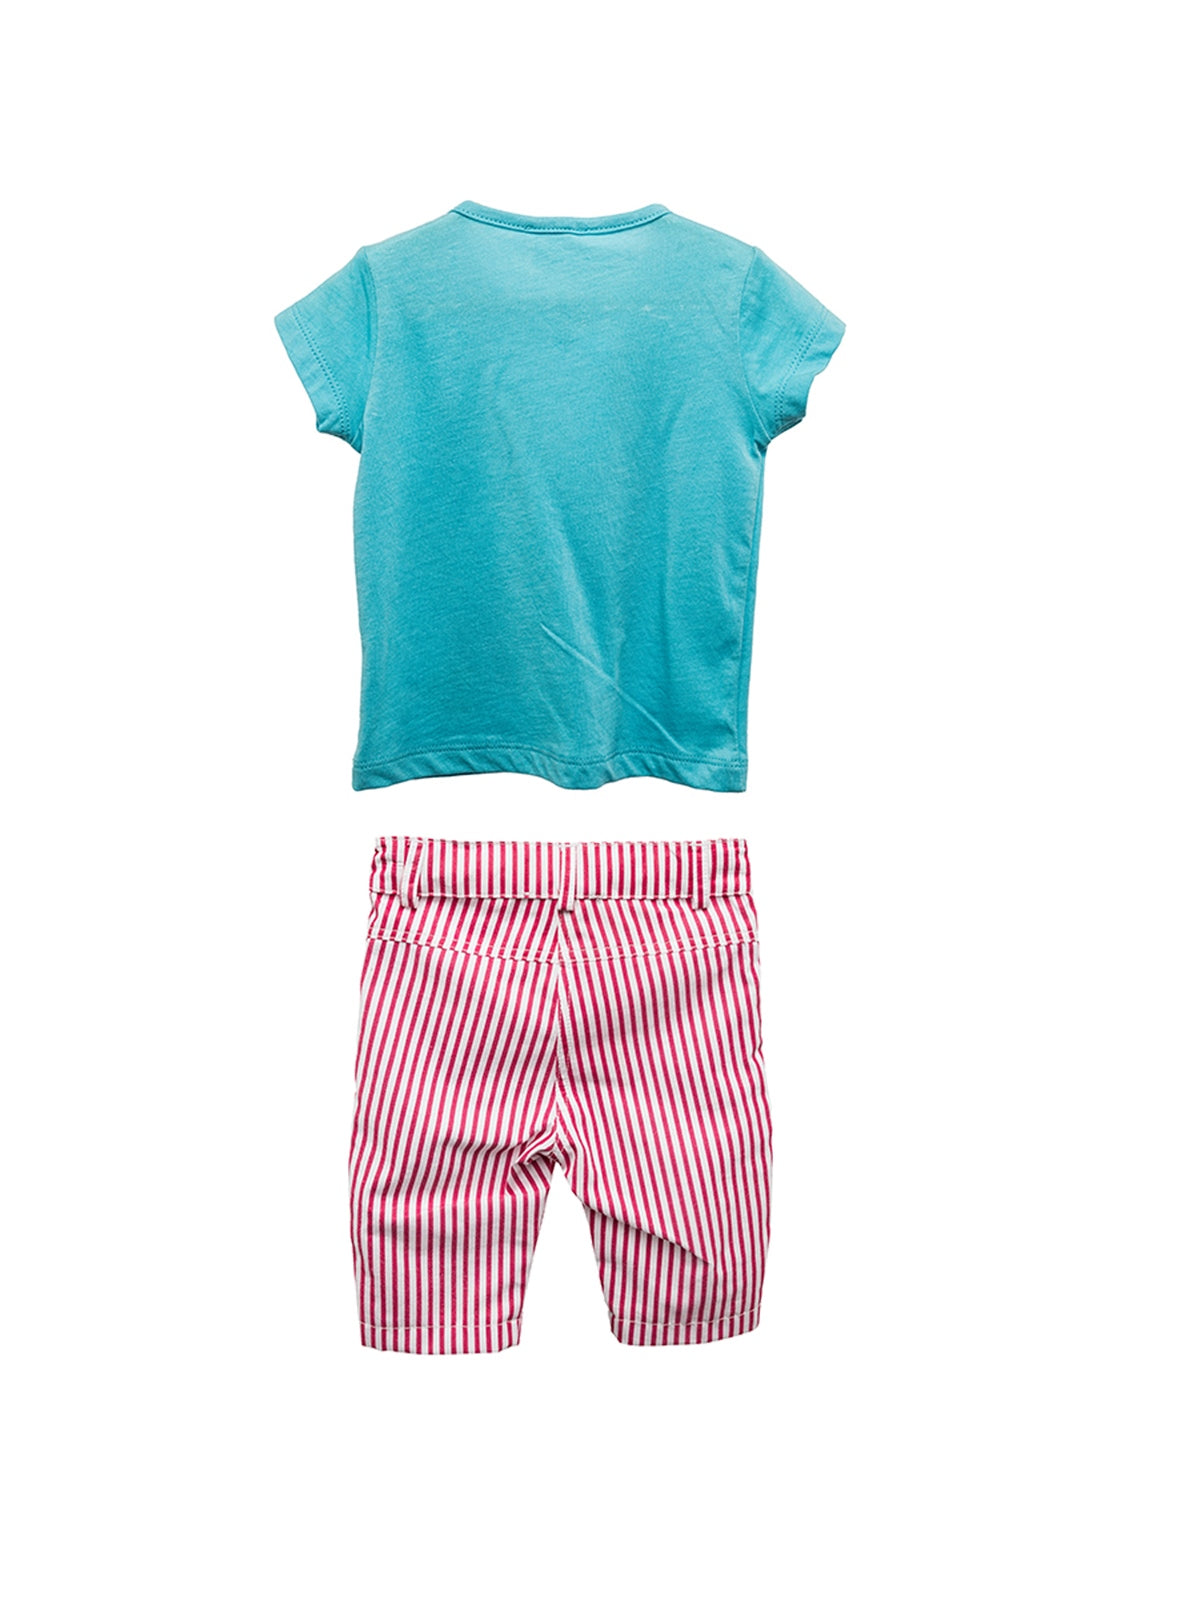 Kız Bebek Mavi Çizgili Nakışlı Pantolon ve T-Shirt Takım (6ay-4yaş)-1